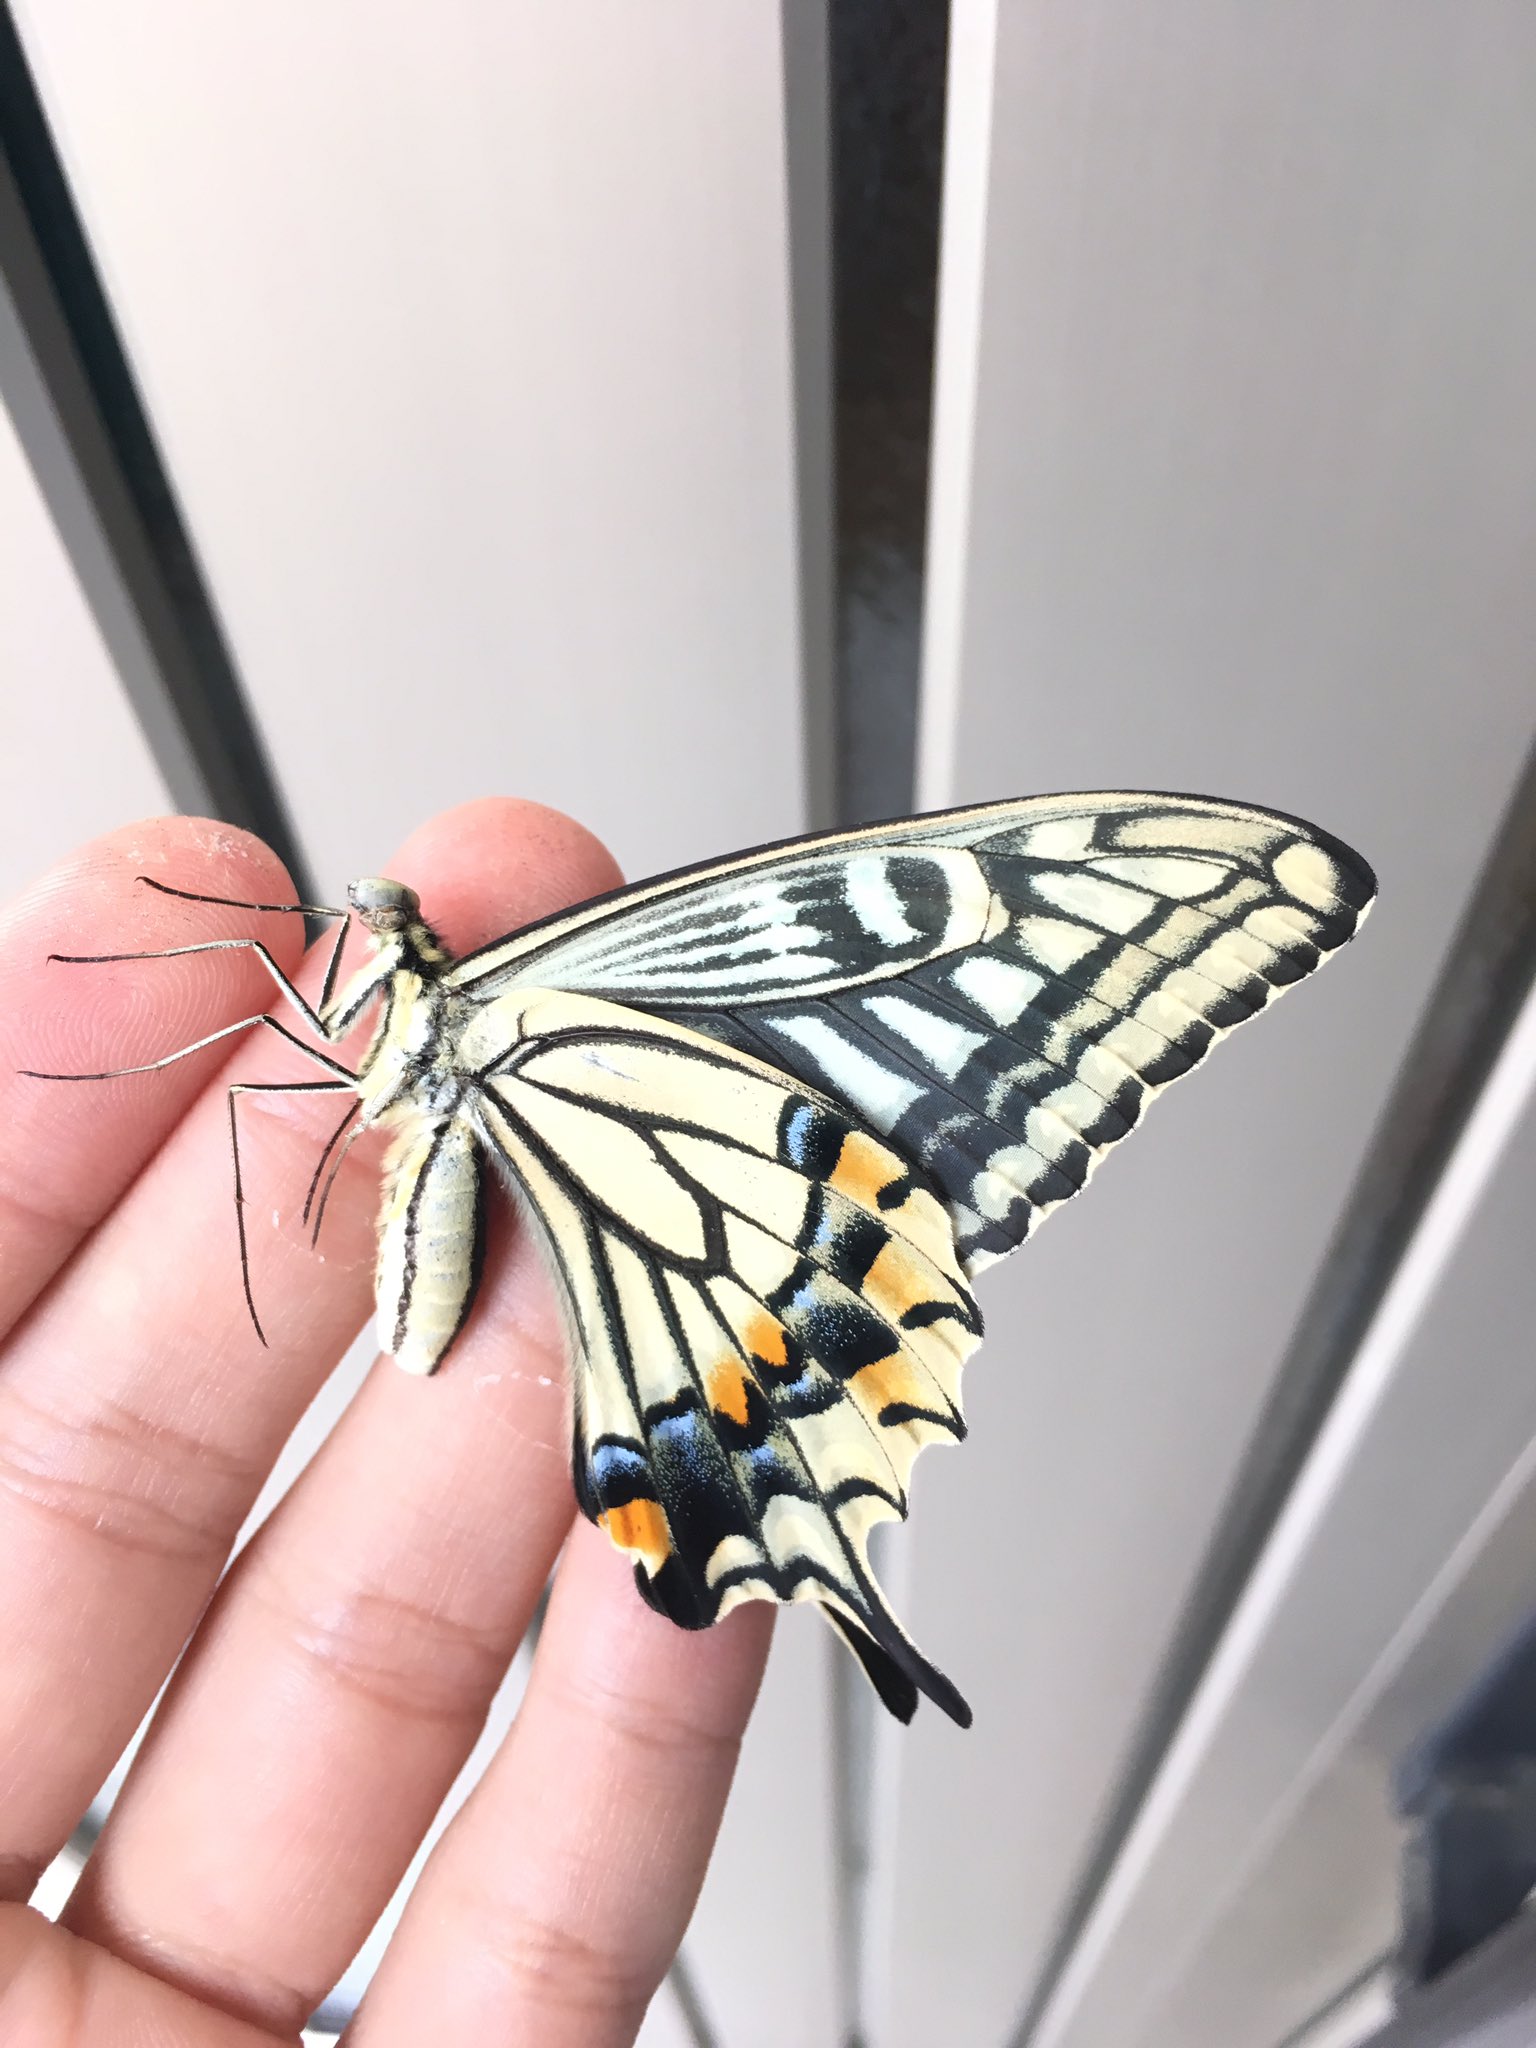 この蝶何かがおかしい 顔をよく見たら普通の蝶と違う顔に驚きを隠せない 話題の画像プラス